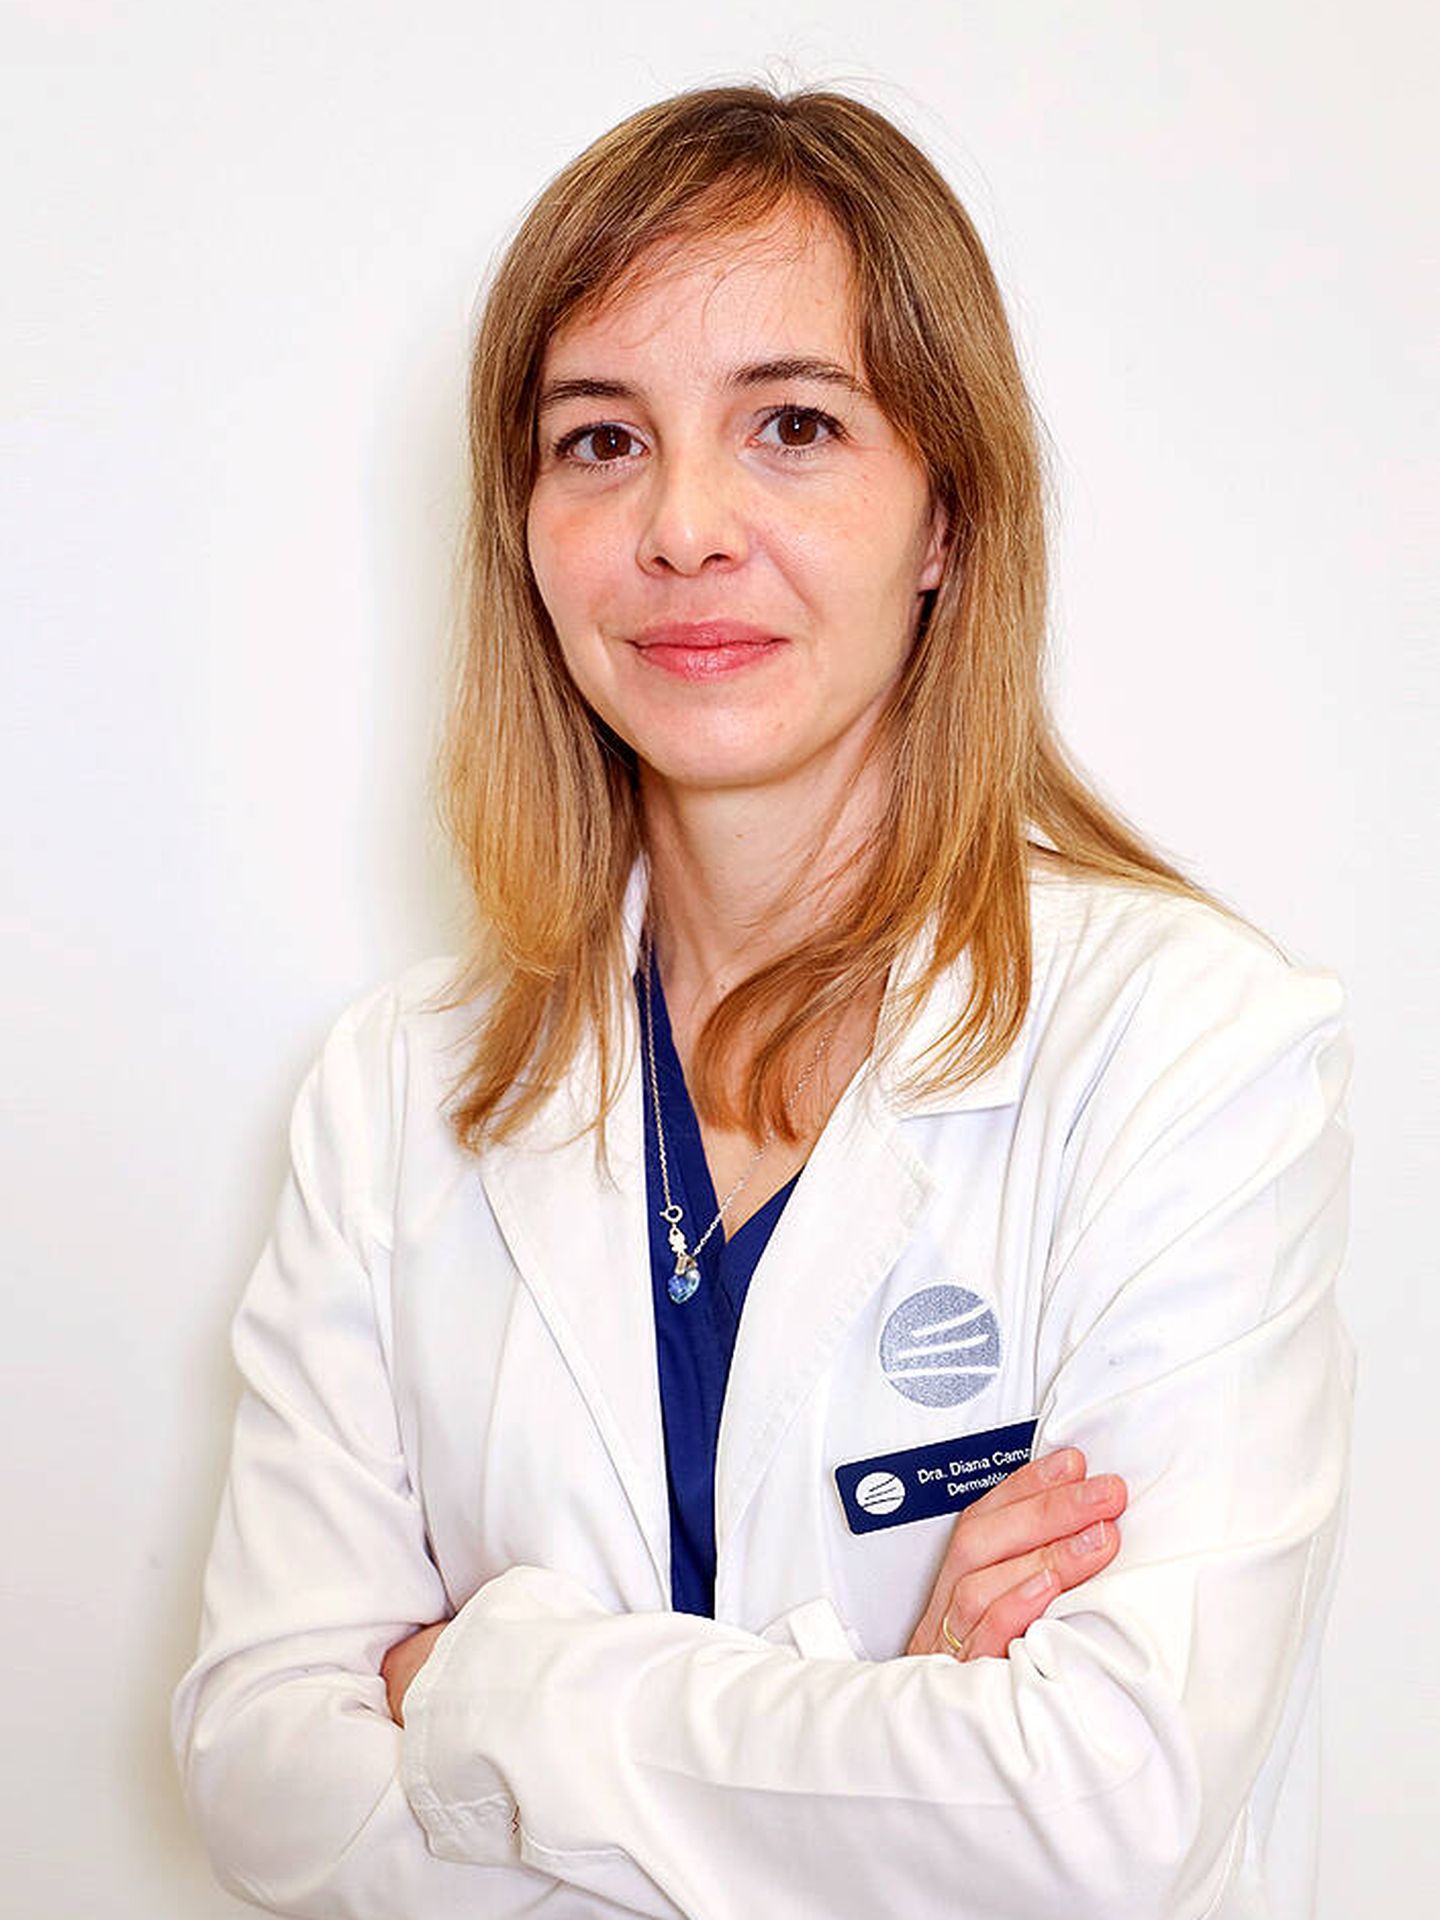 La doctora Diana Camacho, directora de la Unidad de Salud Capilar del Hospital Ruber Internacional y Clínica Dermatológica Internacional. (Foto cedida)